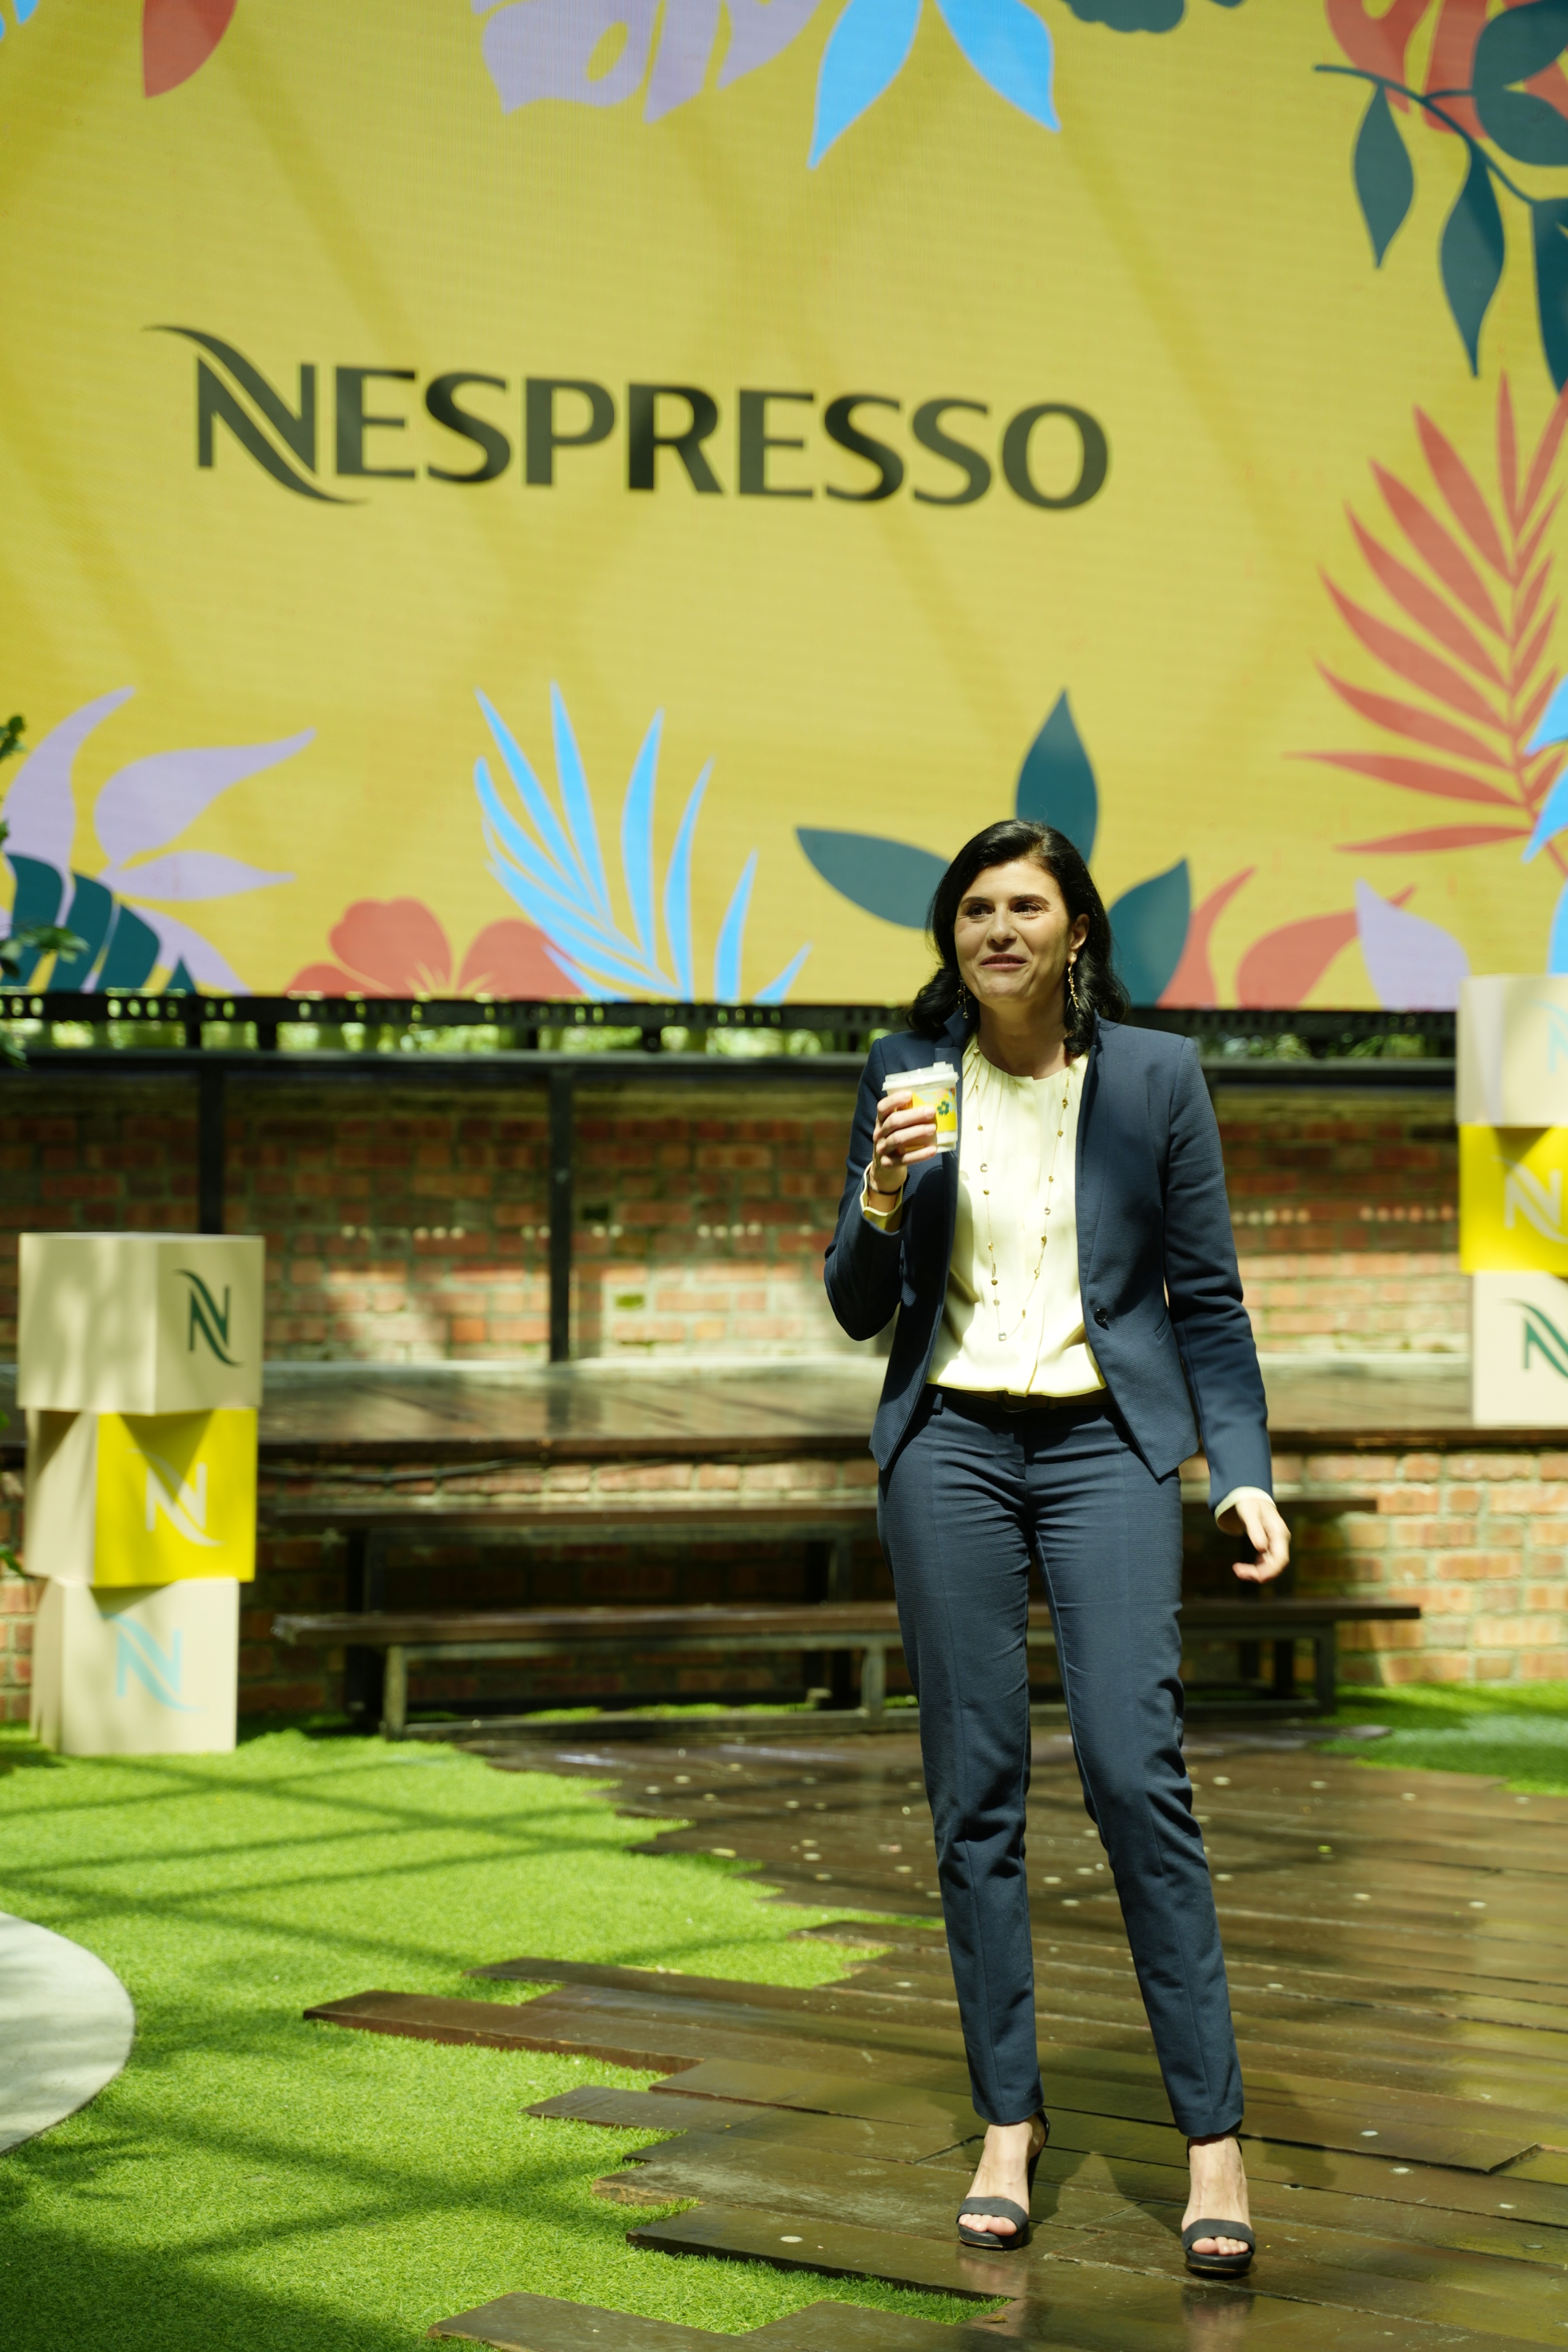 NESPRESSO Alessandra Ambrosio Mug Brew & Enjoy Coffee Cup *Limited Edition*